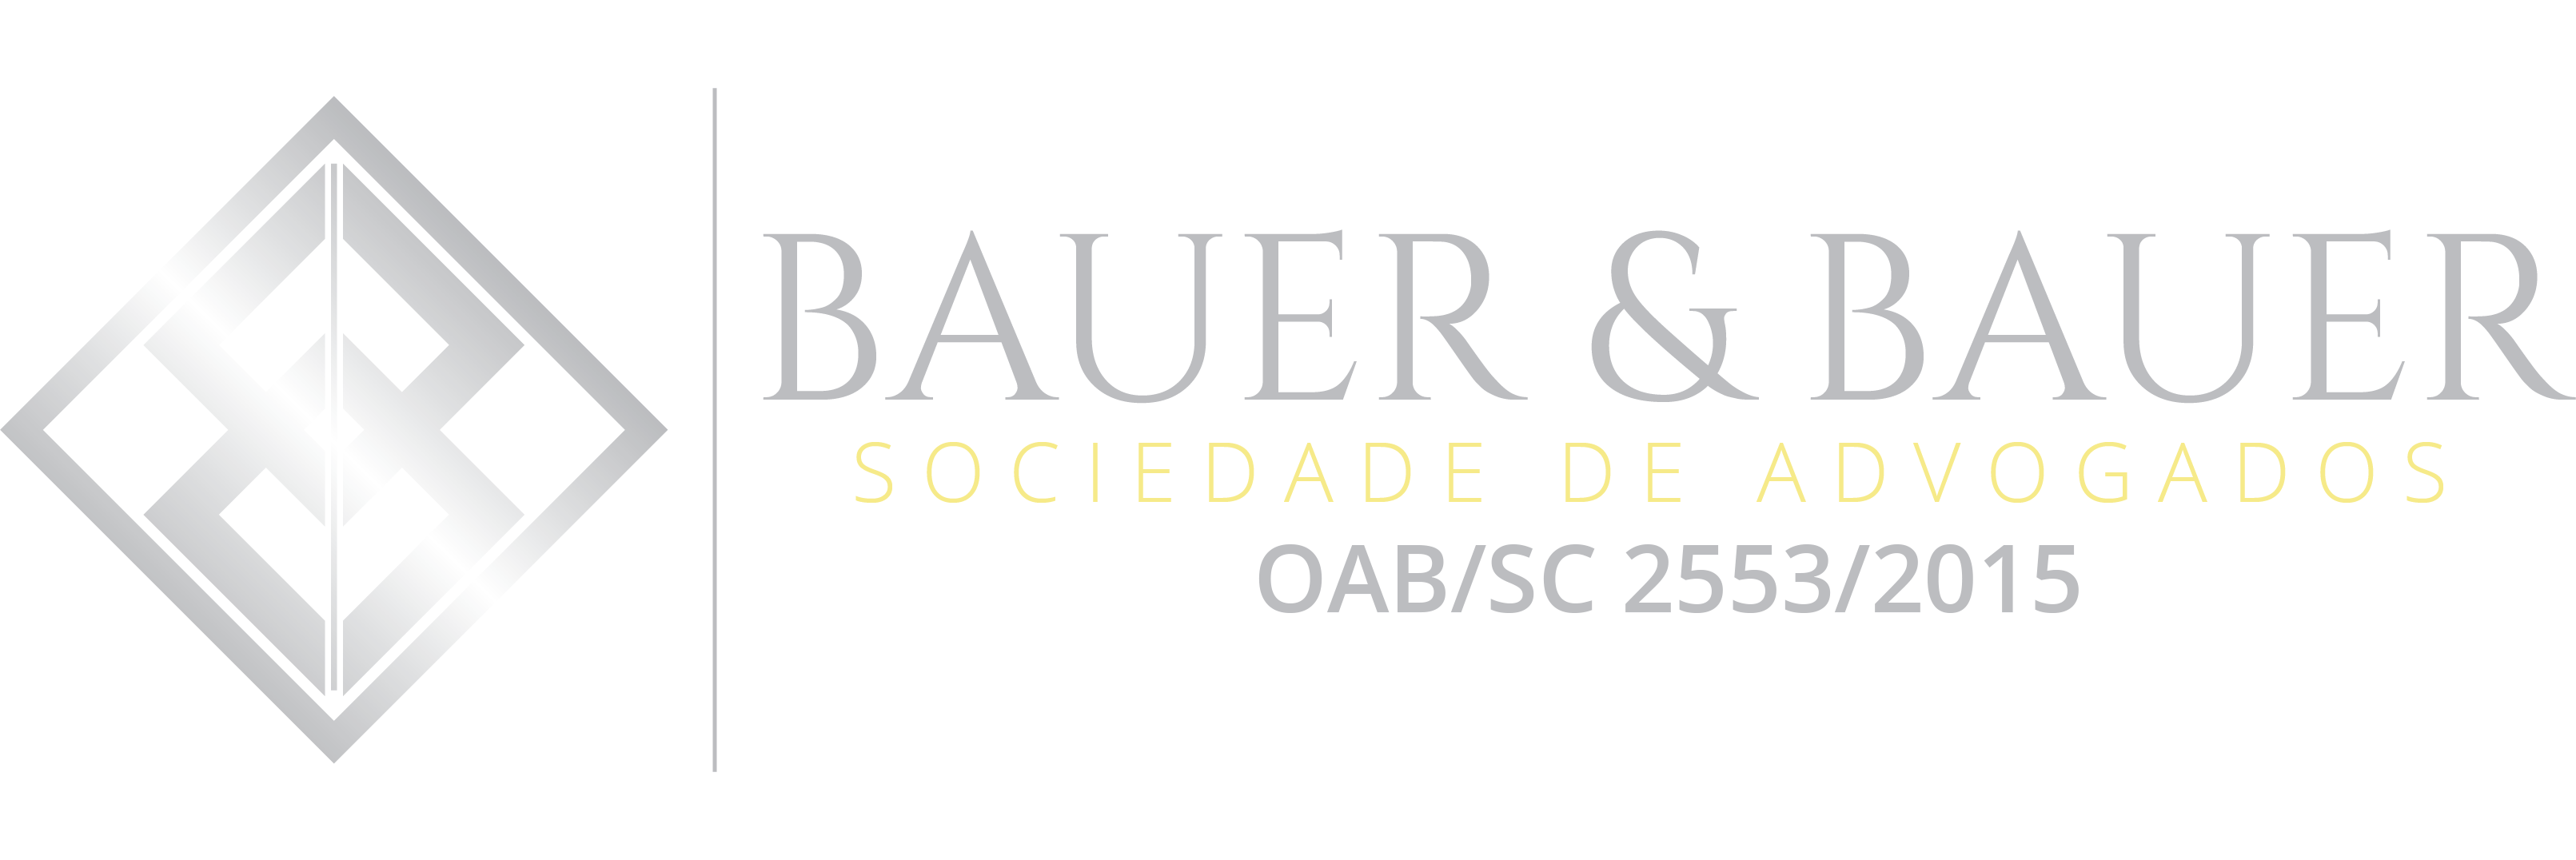 Logo Bauer & Bauer Sociedade de Advogados